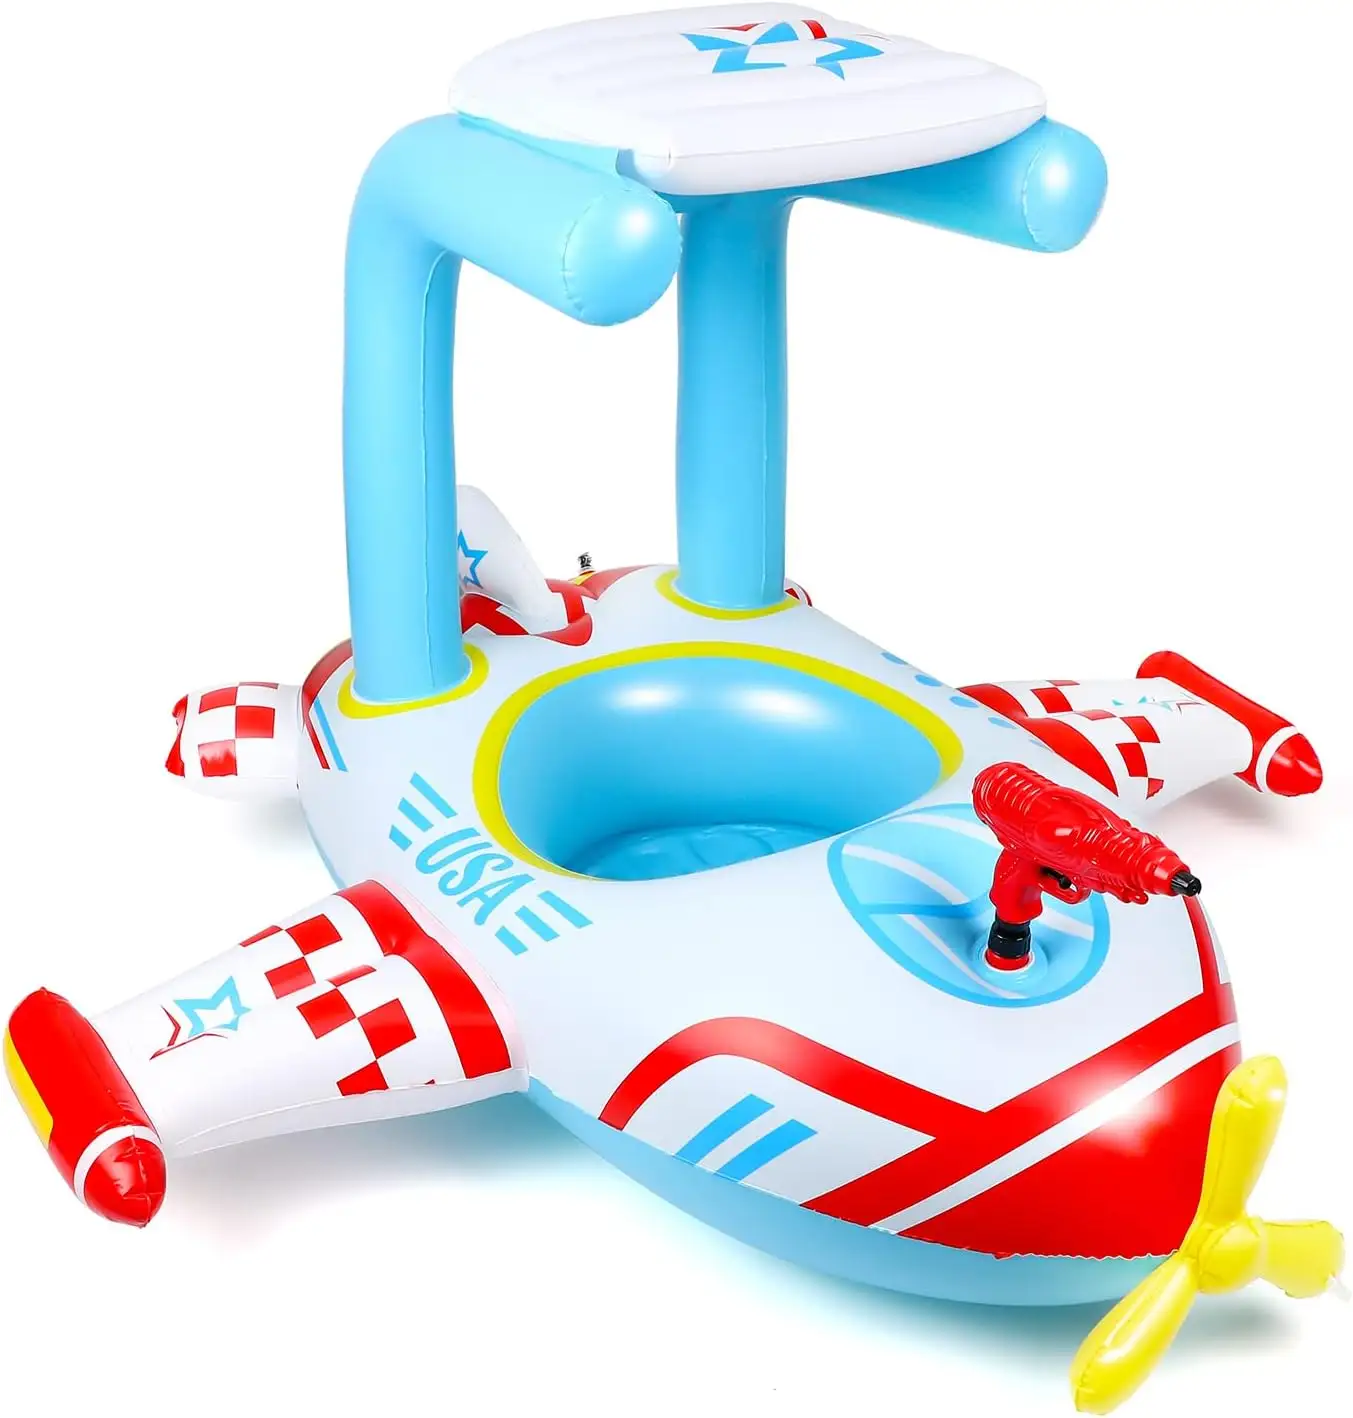 Pool-Schwimmer-Spielzeug für Kinder aufblasbares Piratenschiff Schwimmer mit integriertem Squirt-Gun dicker Pool Boot-Reiten-Spielzeug für Kinder